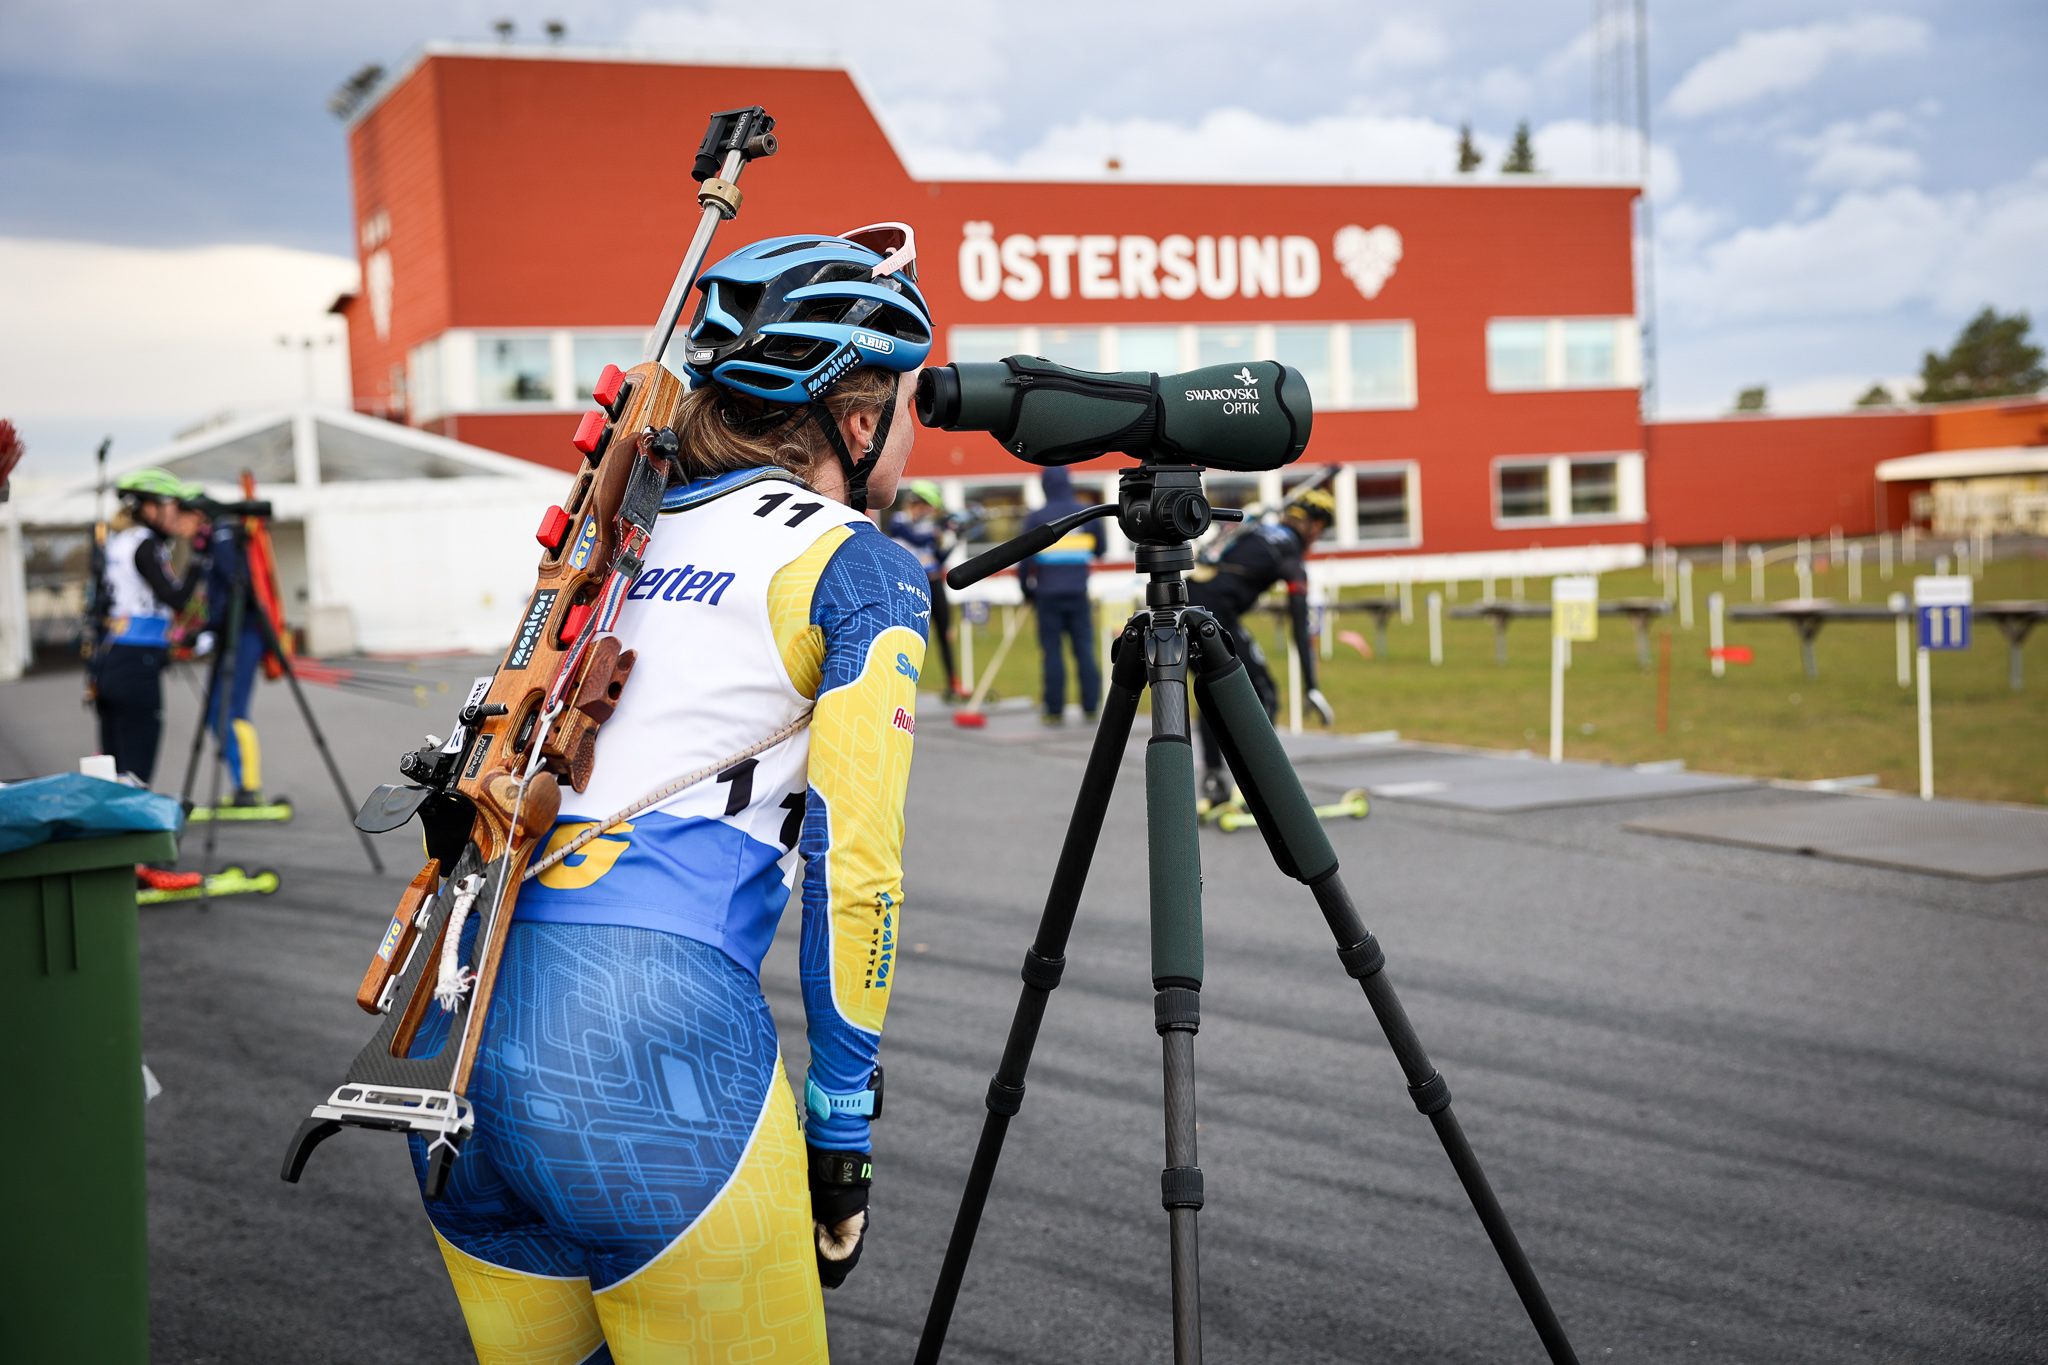 Åkare tittat i kikaren på skjutvallen i Östersund